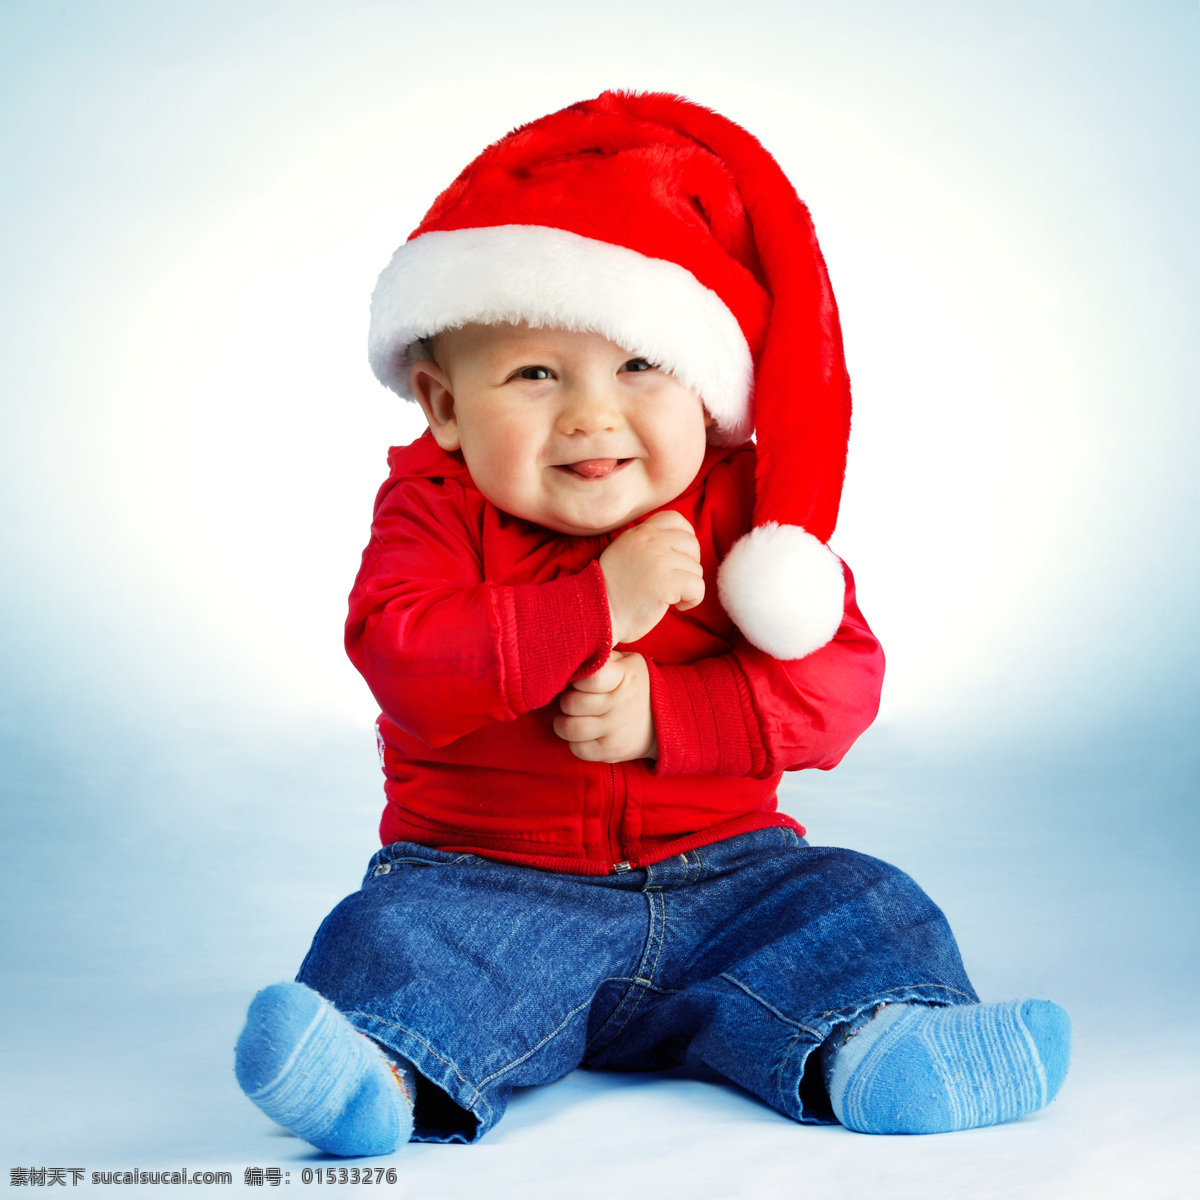 可爱 圣诞 宝宝 圣诞节 圣诞帽 儿童 小孩 人物 玩耍 圣诞宝宝 节日素材 宝宝图片 人物图片